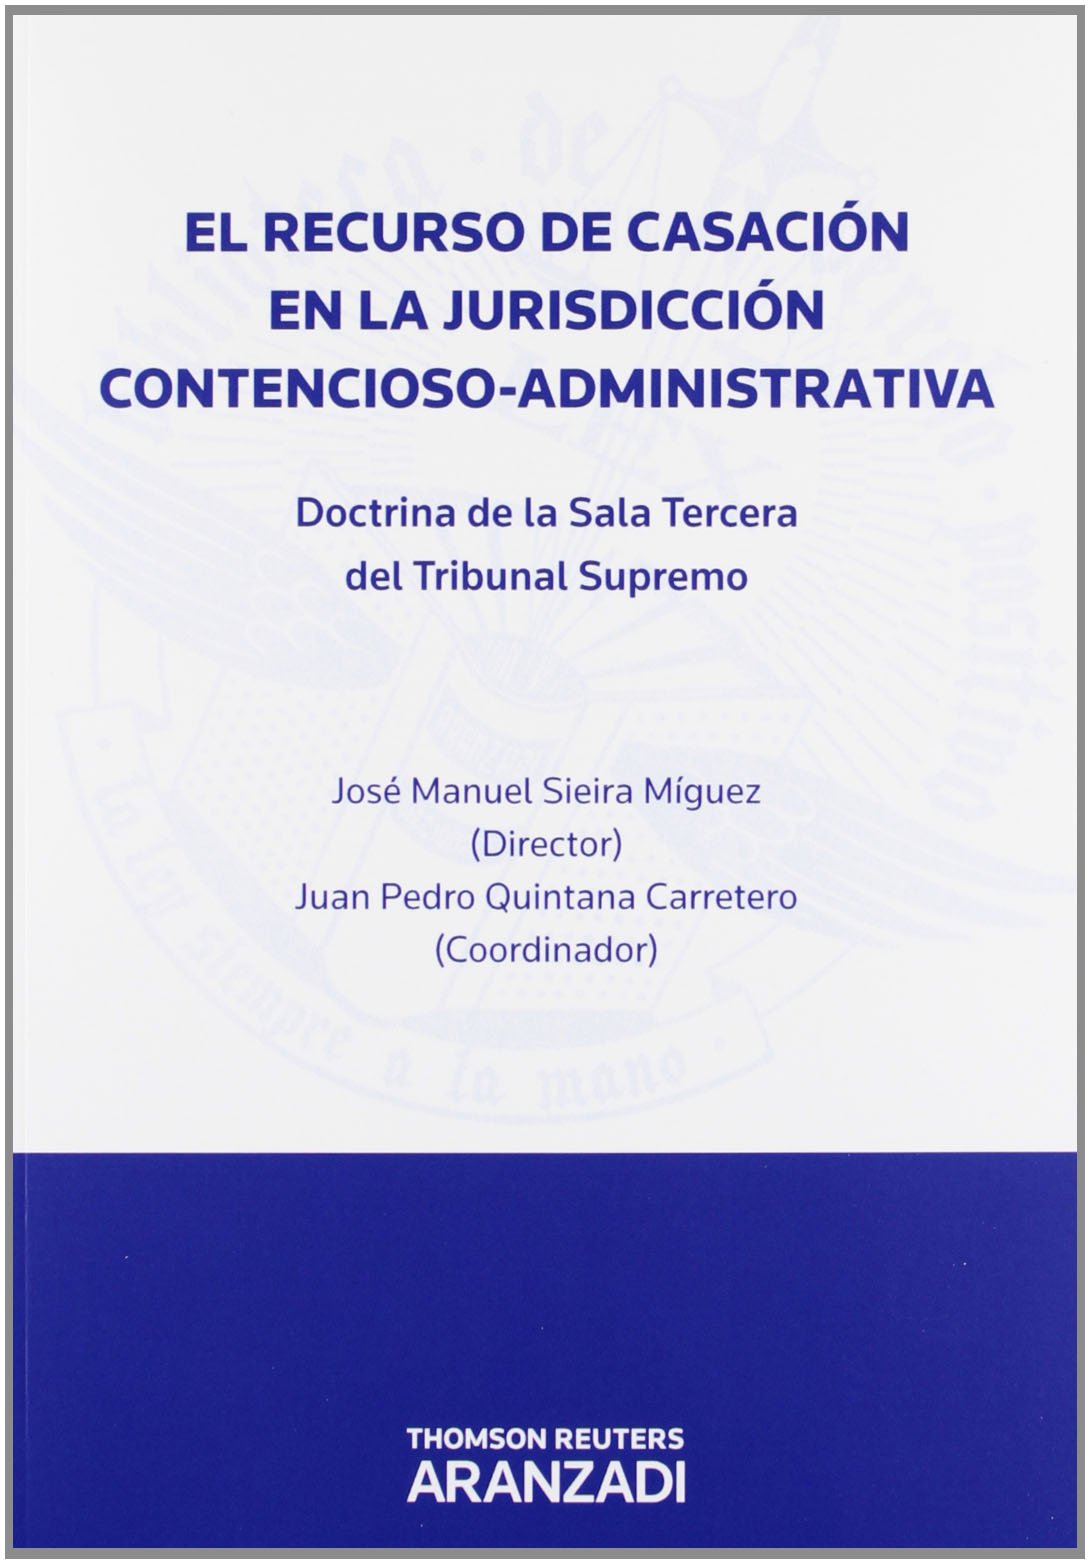 Imagen de portada del libro El recurso de casación en la jurisdicción contencioso-administrativa